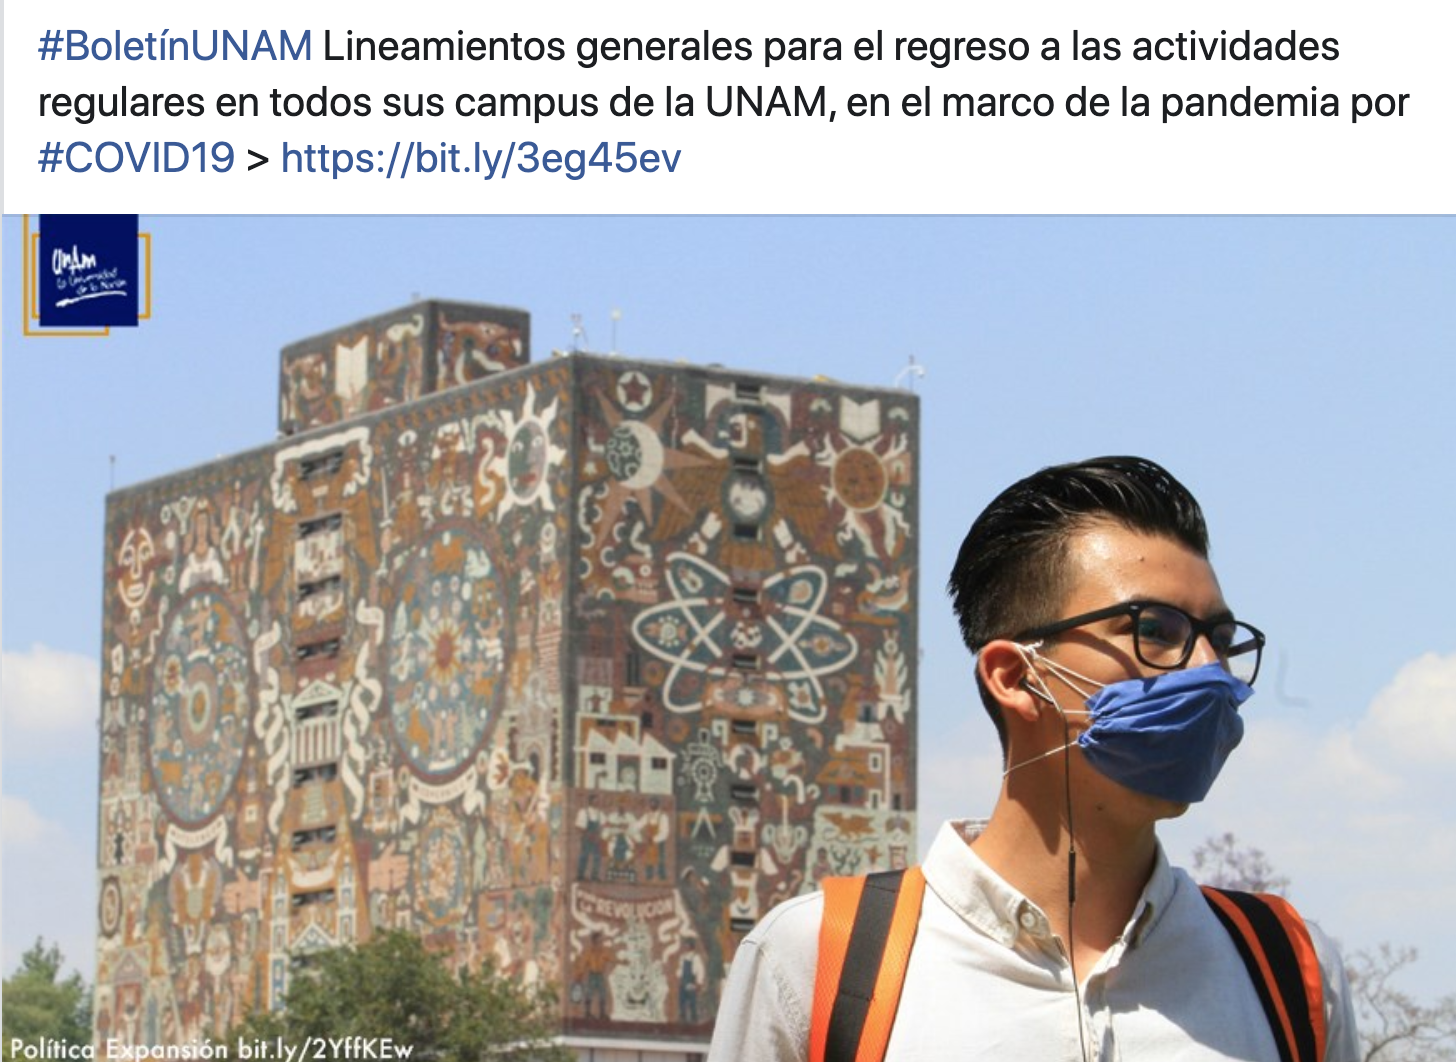 La UNAM presenta lineamientos generales para el regreso a las actividades universitarias